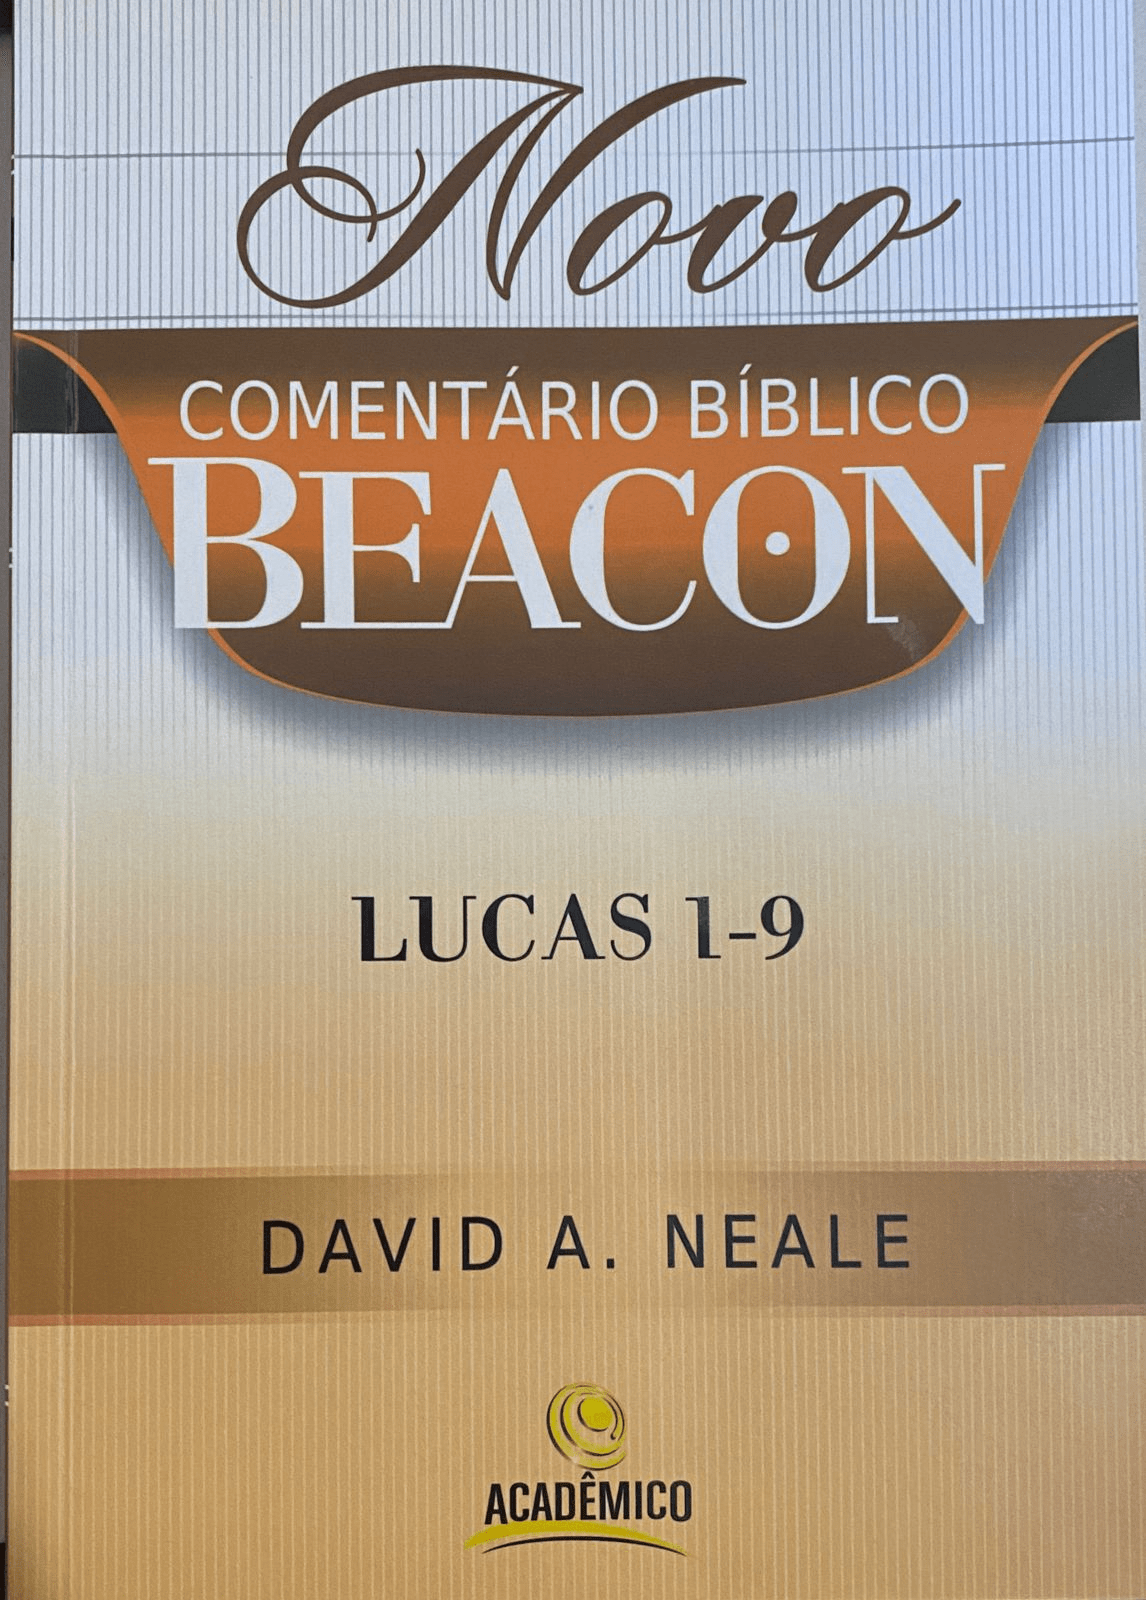 Novo Comentario Biblico Beacon Lucas 1-9